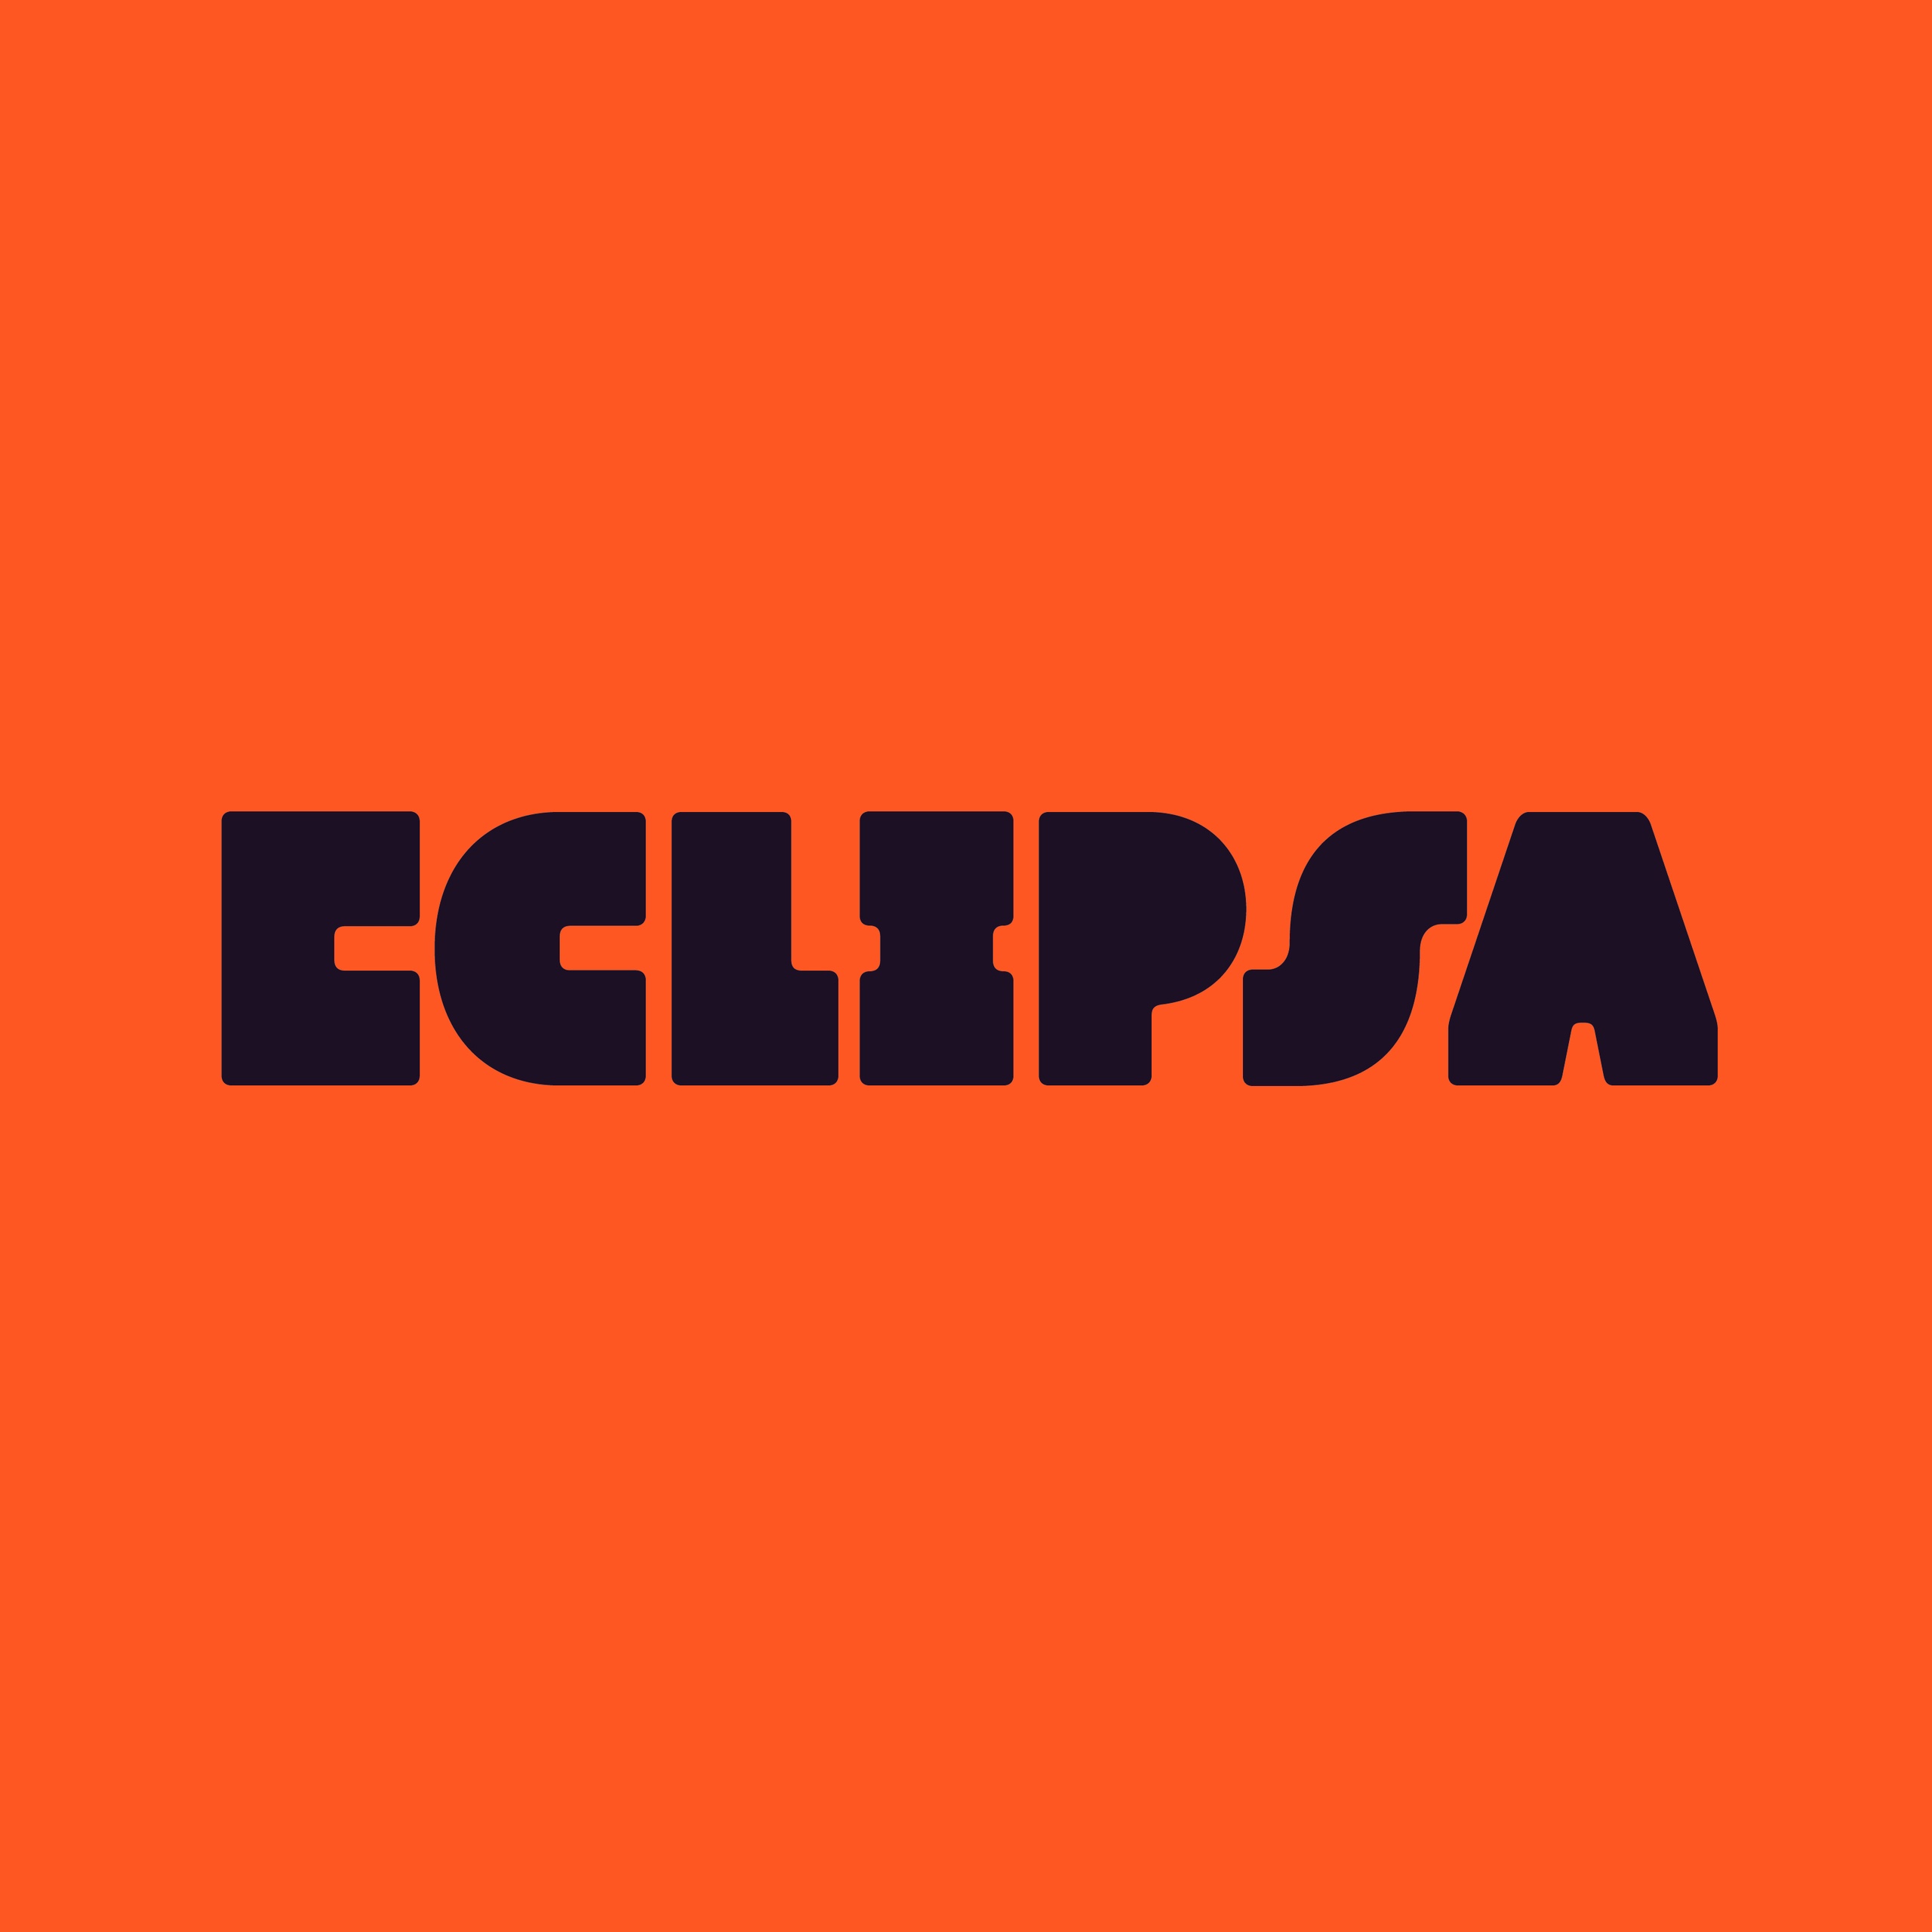 Ejemplo de fuente Eclipsa